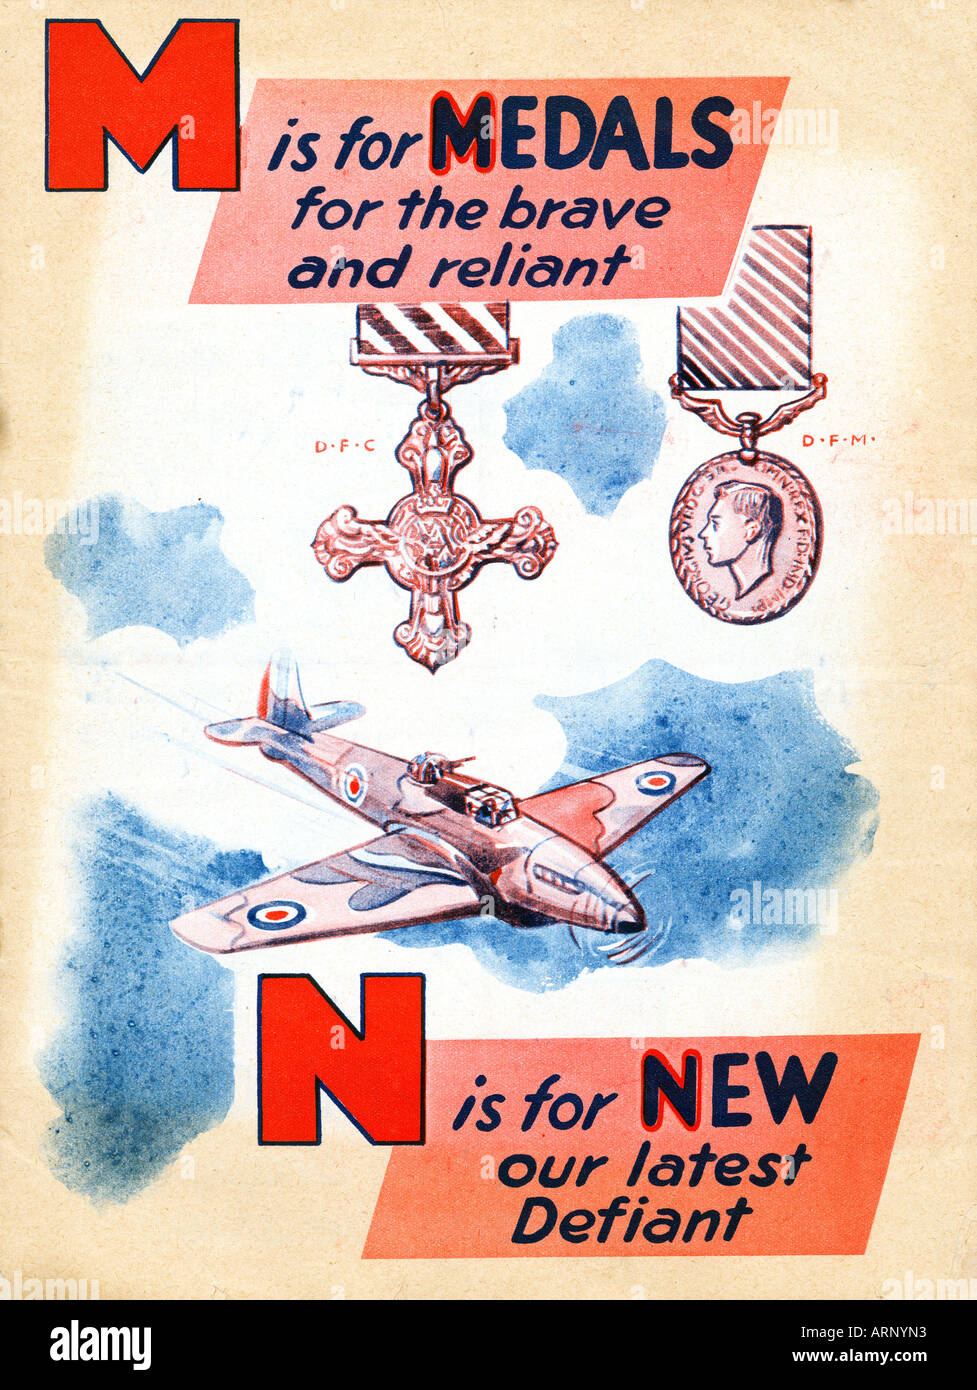 Bataille d'Angleterre M N'est pour de nouvelles médailles pour les enfants britanniques Alphabet book avec les décorations de la RAF DFC et DFM Banque D'Images